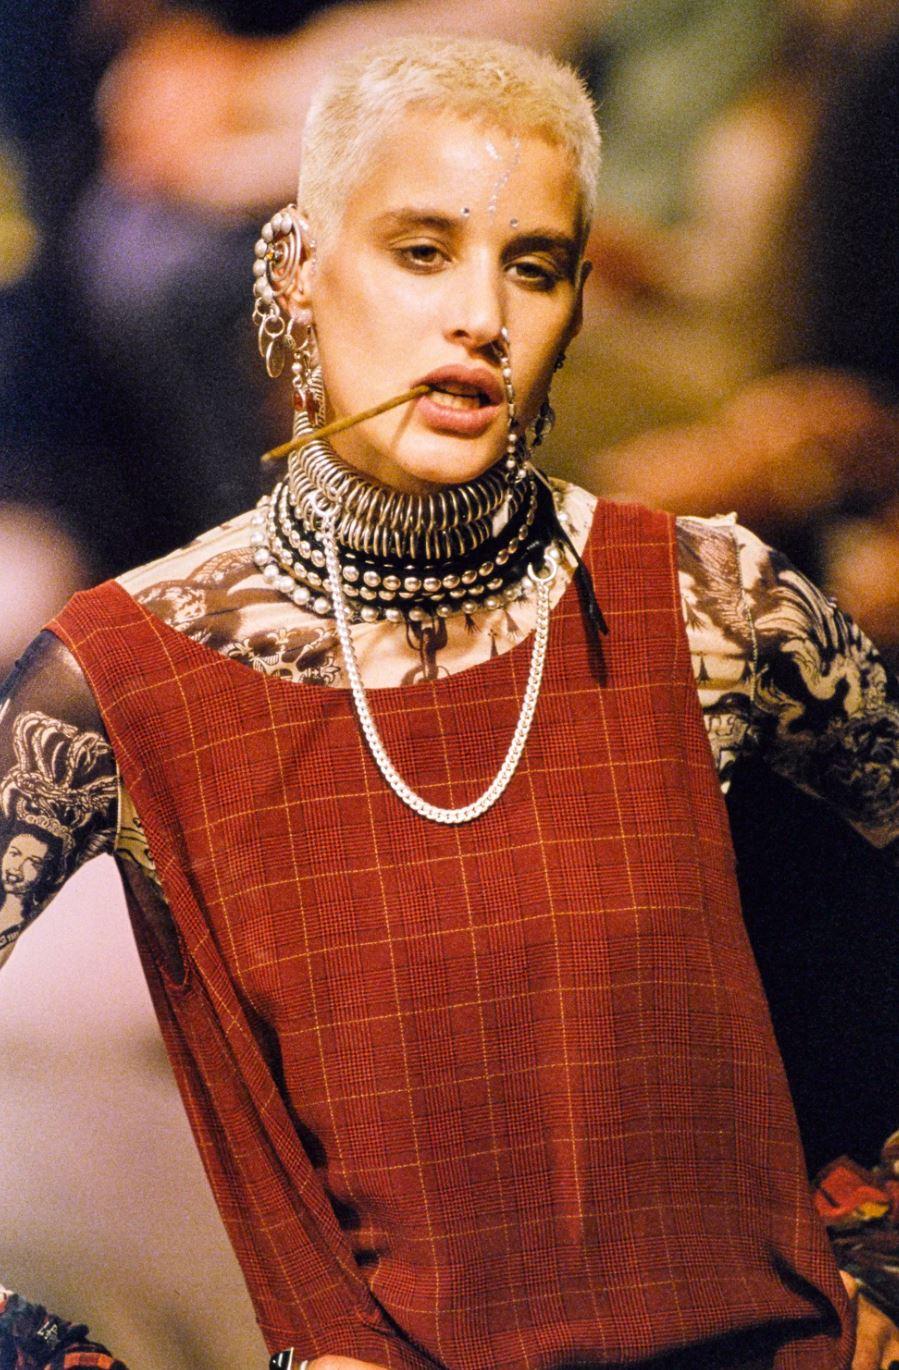 Brown Jean Paul Gaultier Tartan 1994 Runway Haute Couture Shirt Top Tunic Wrap Dress